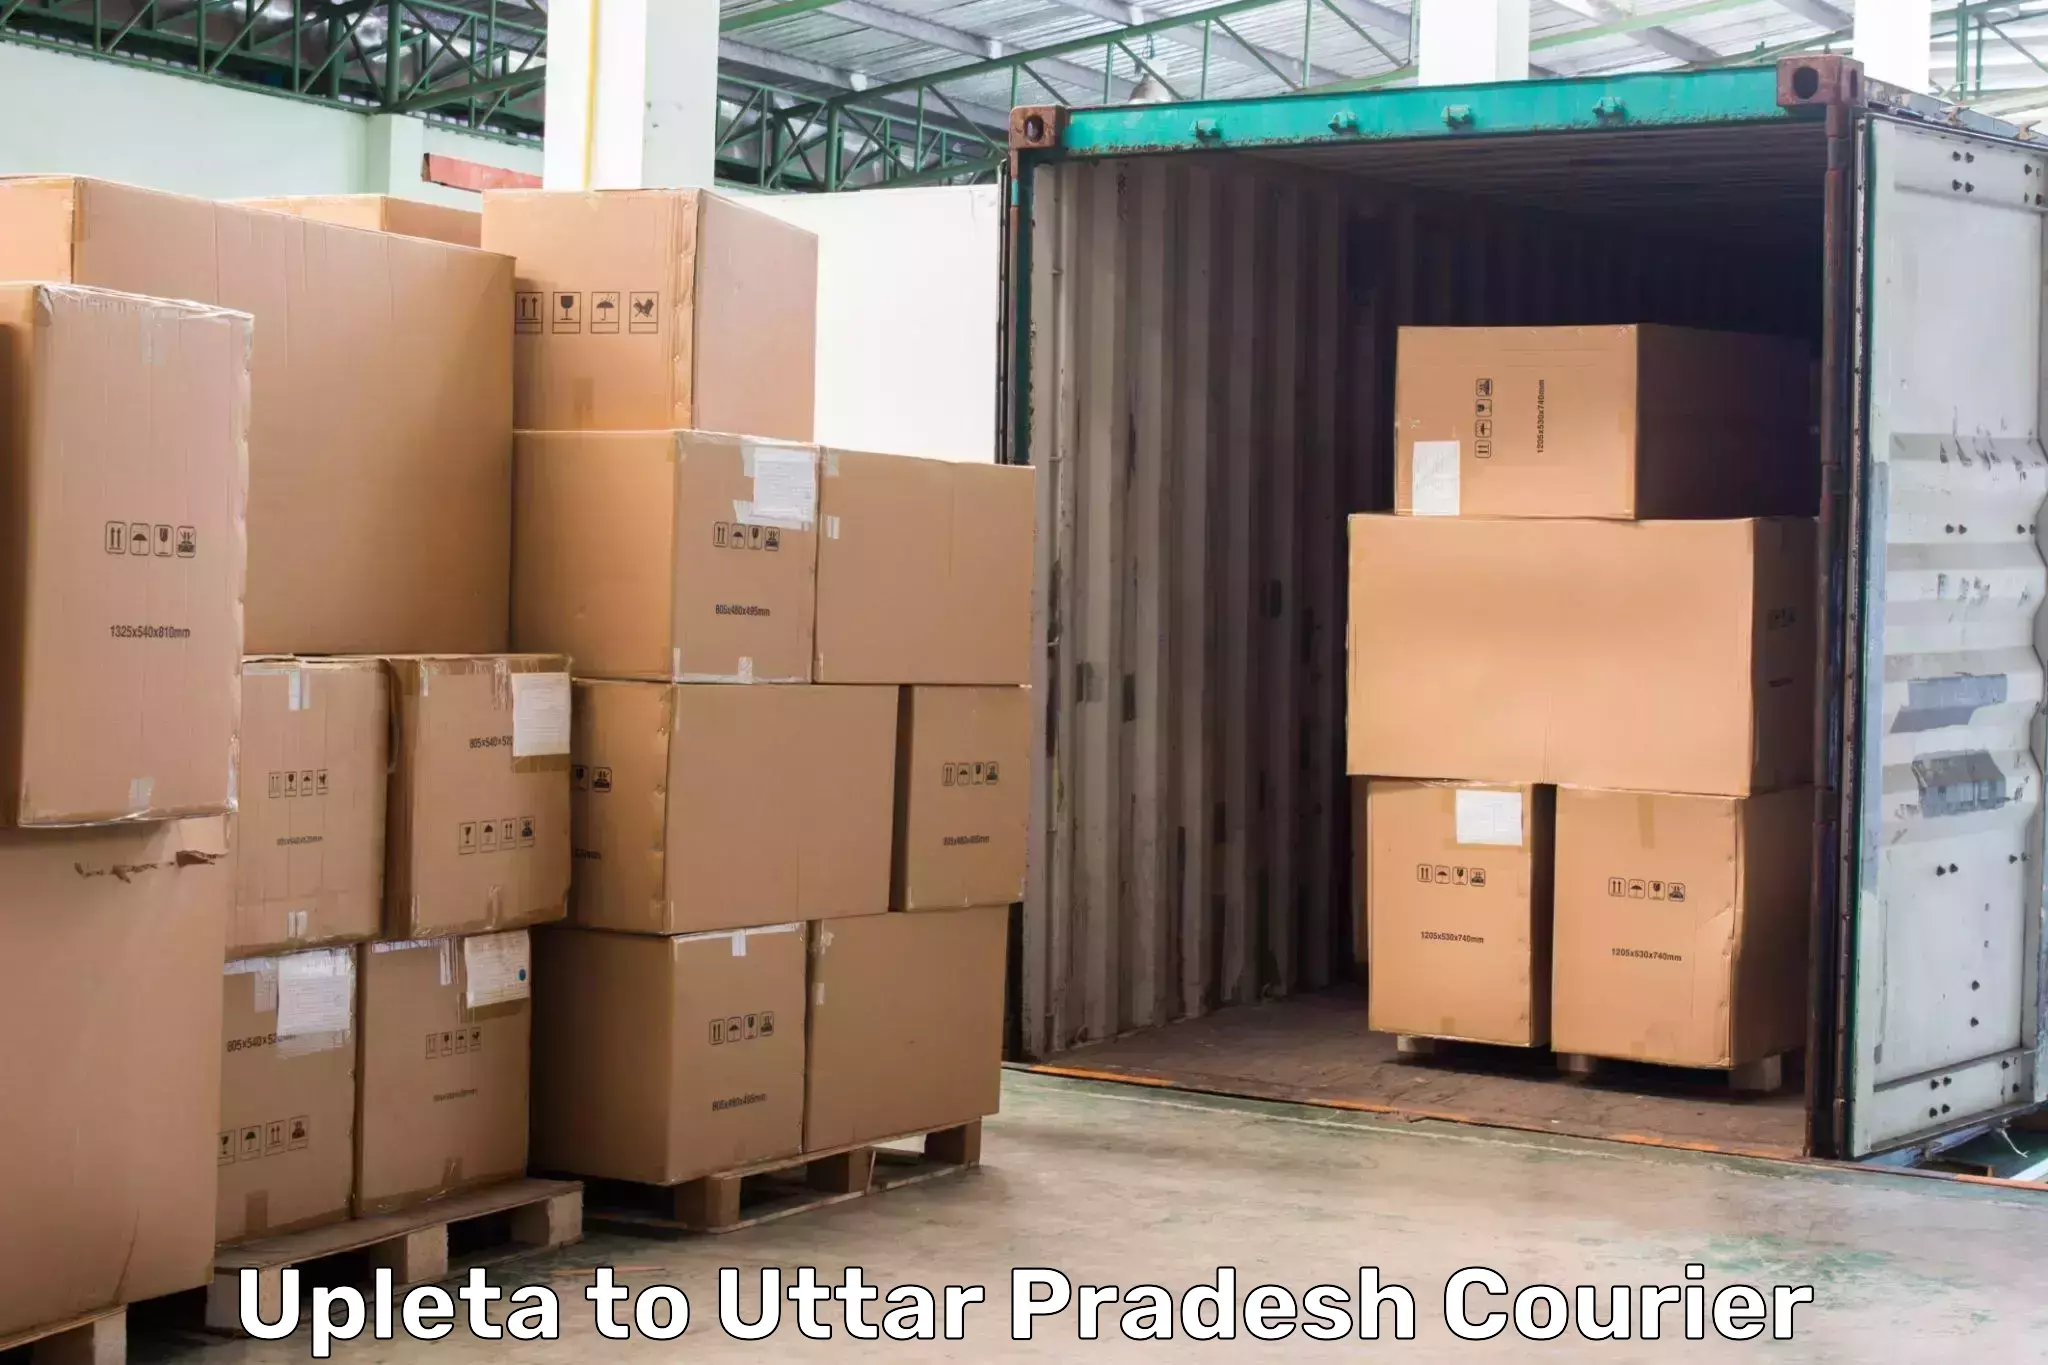 Door-to-door shipment in Upleta to Uttar Pradesh